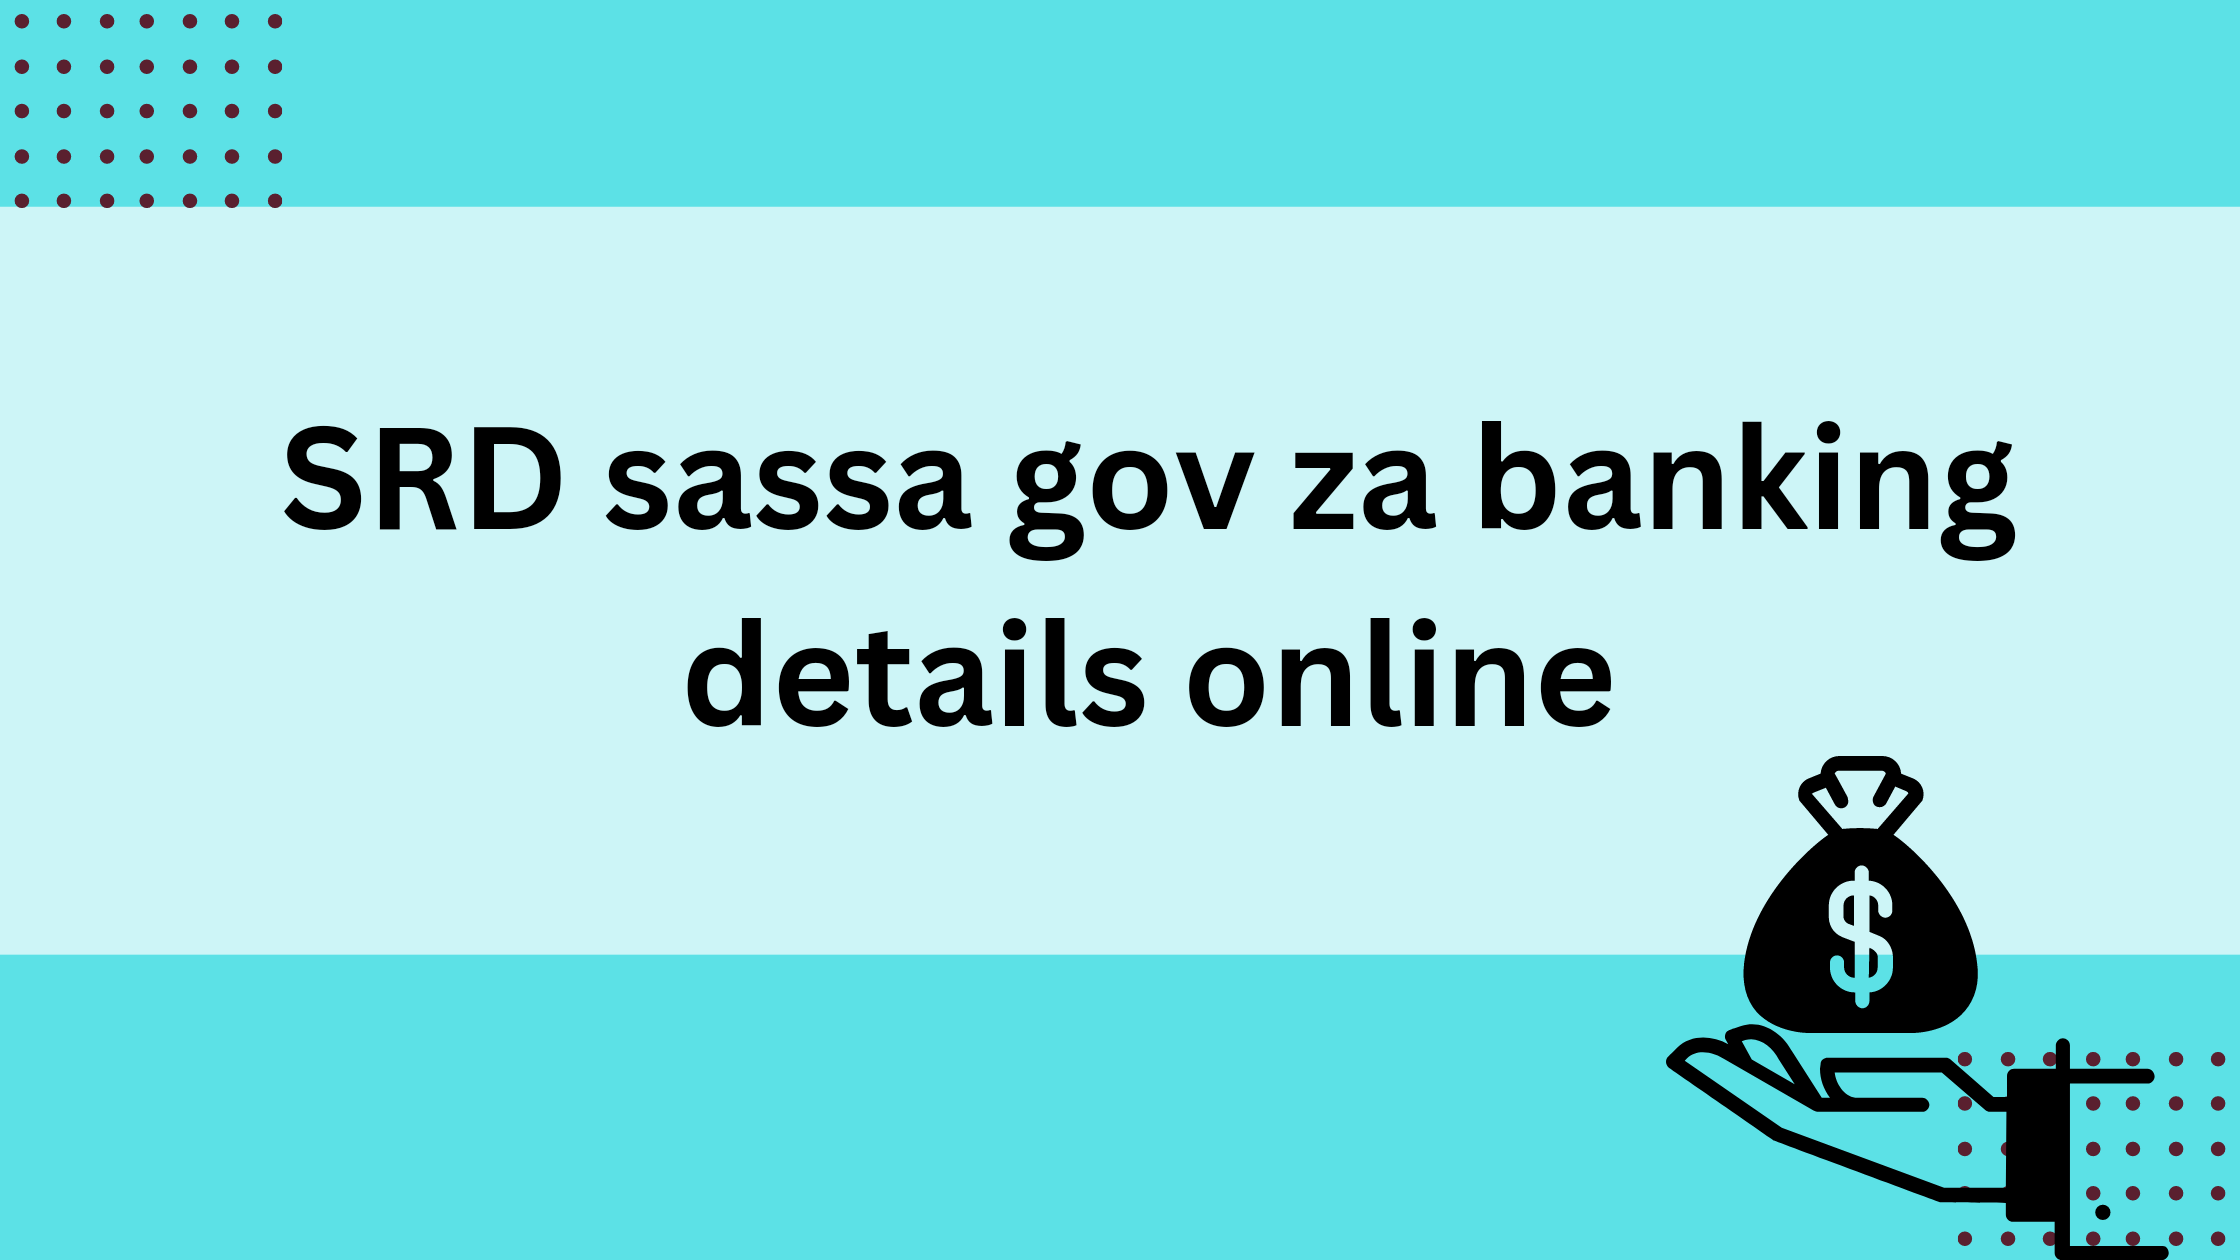 SRD sassa gov za banking details online